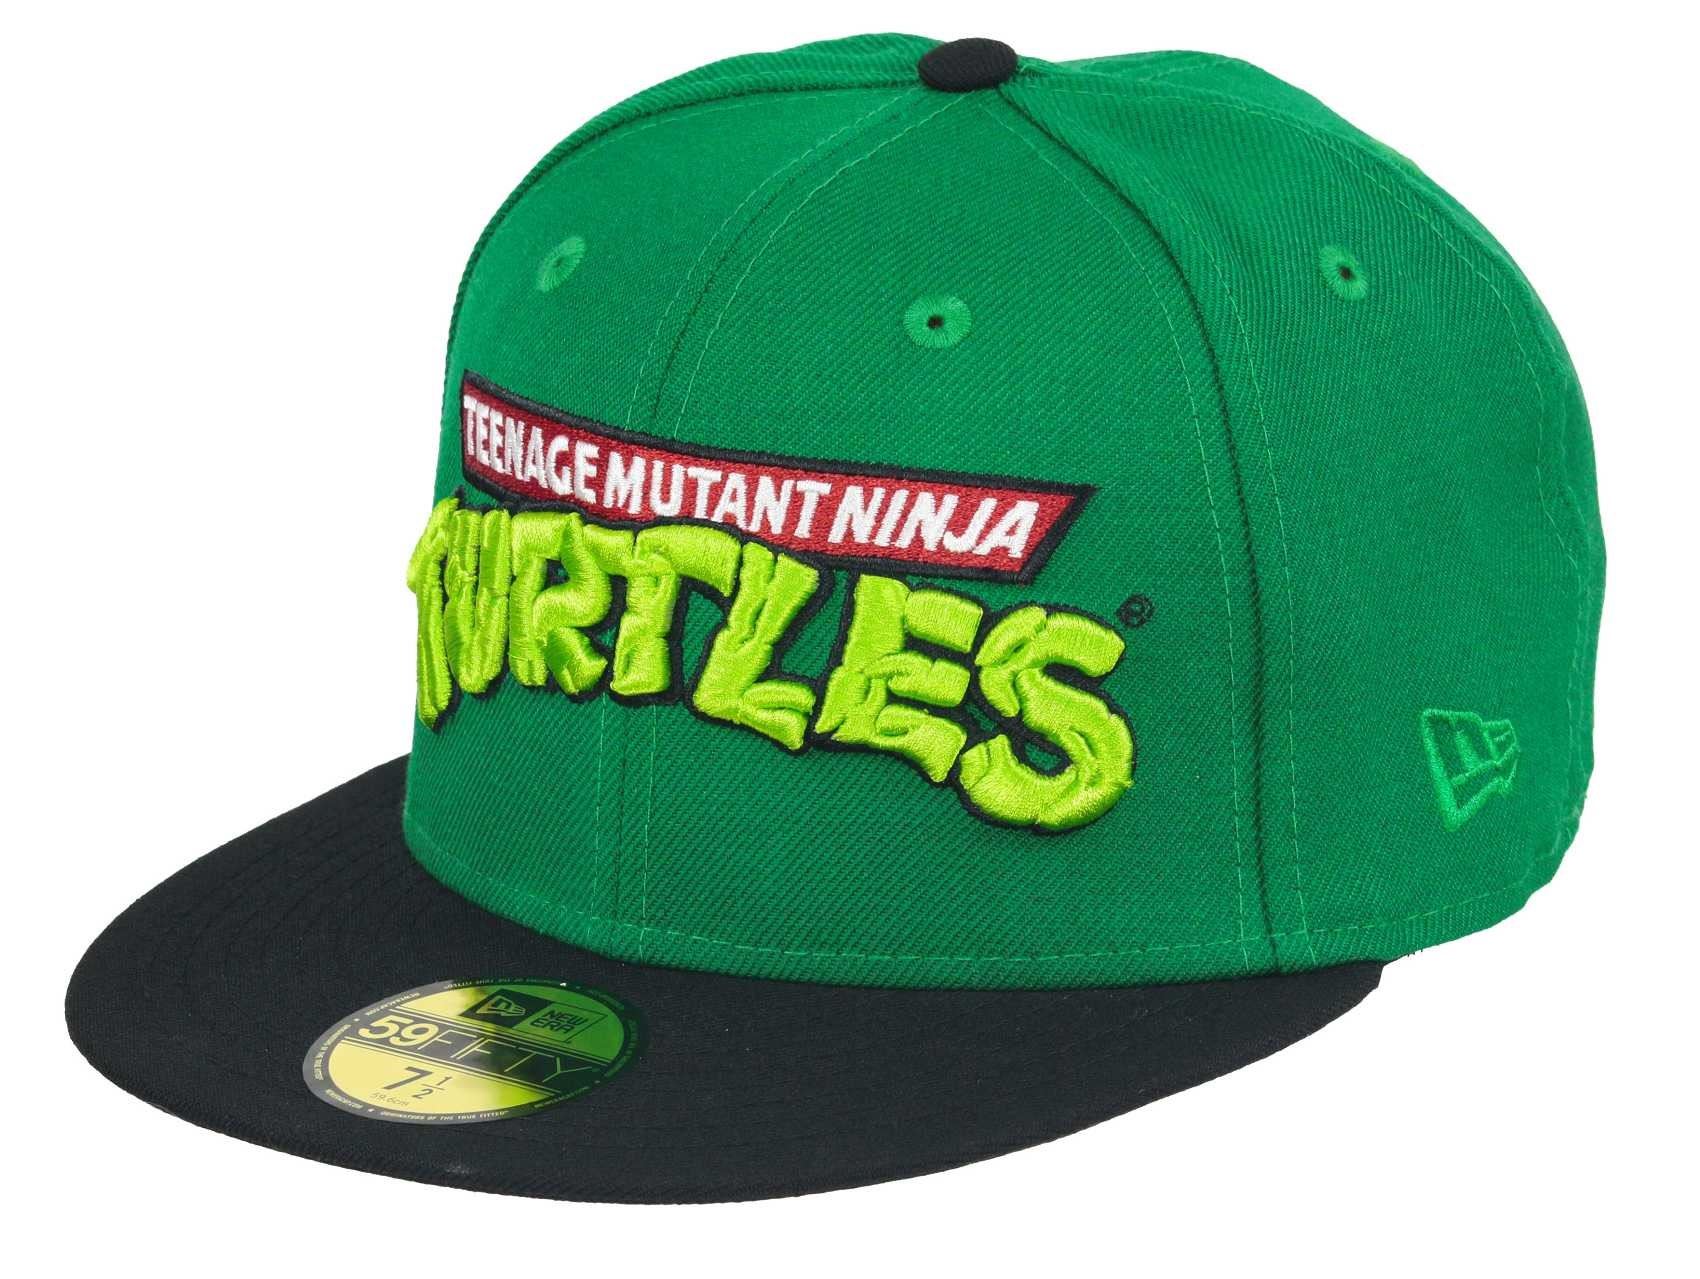 Teenage Mutant Ninja Turtles TMNT Edition 9Fifty Snapback Cap New Era